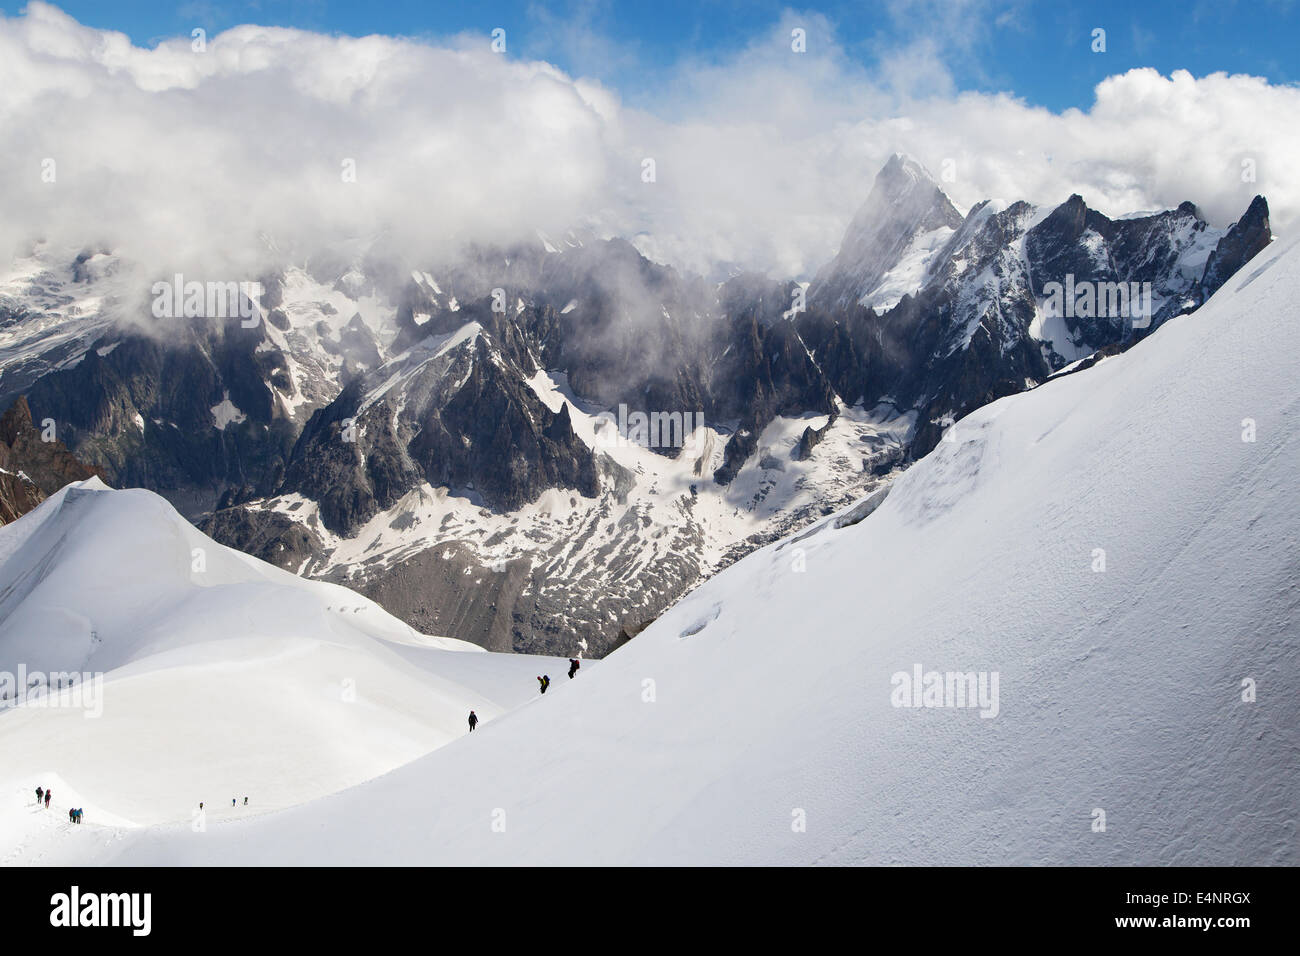 Arete de l'Aiguille du Midi in the Mont Blanc massif, France. Stock Photo